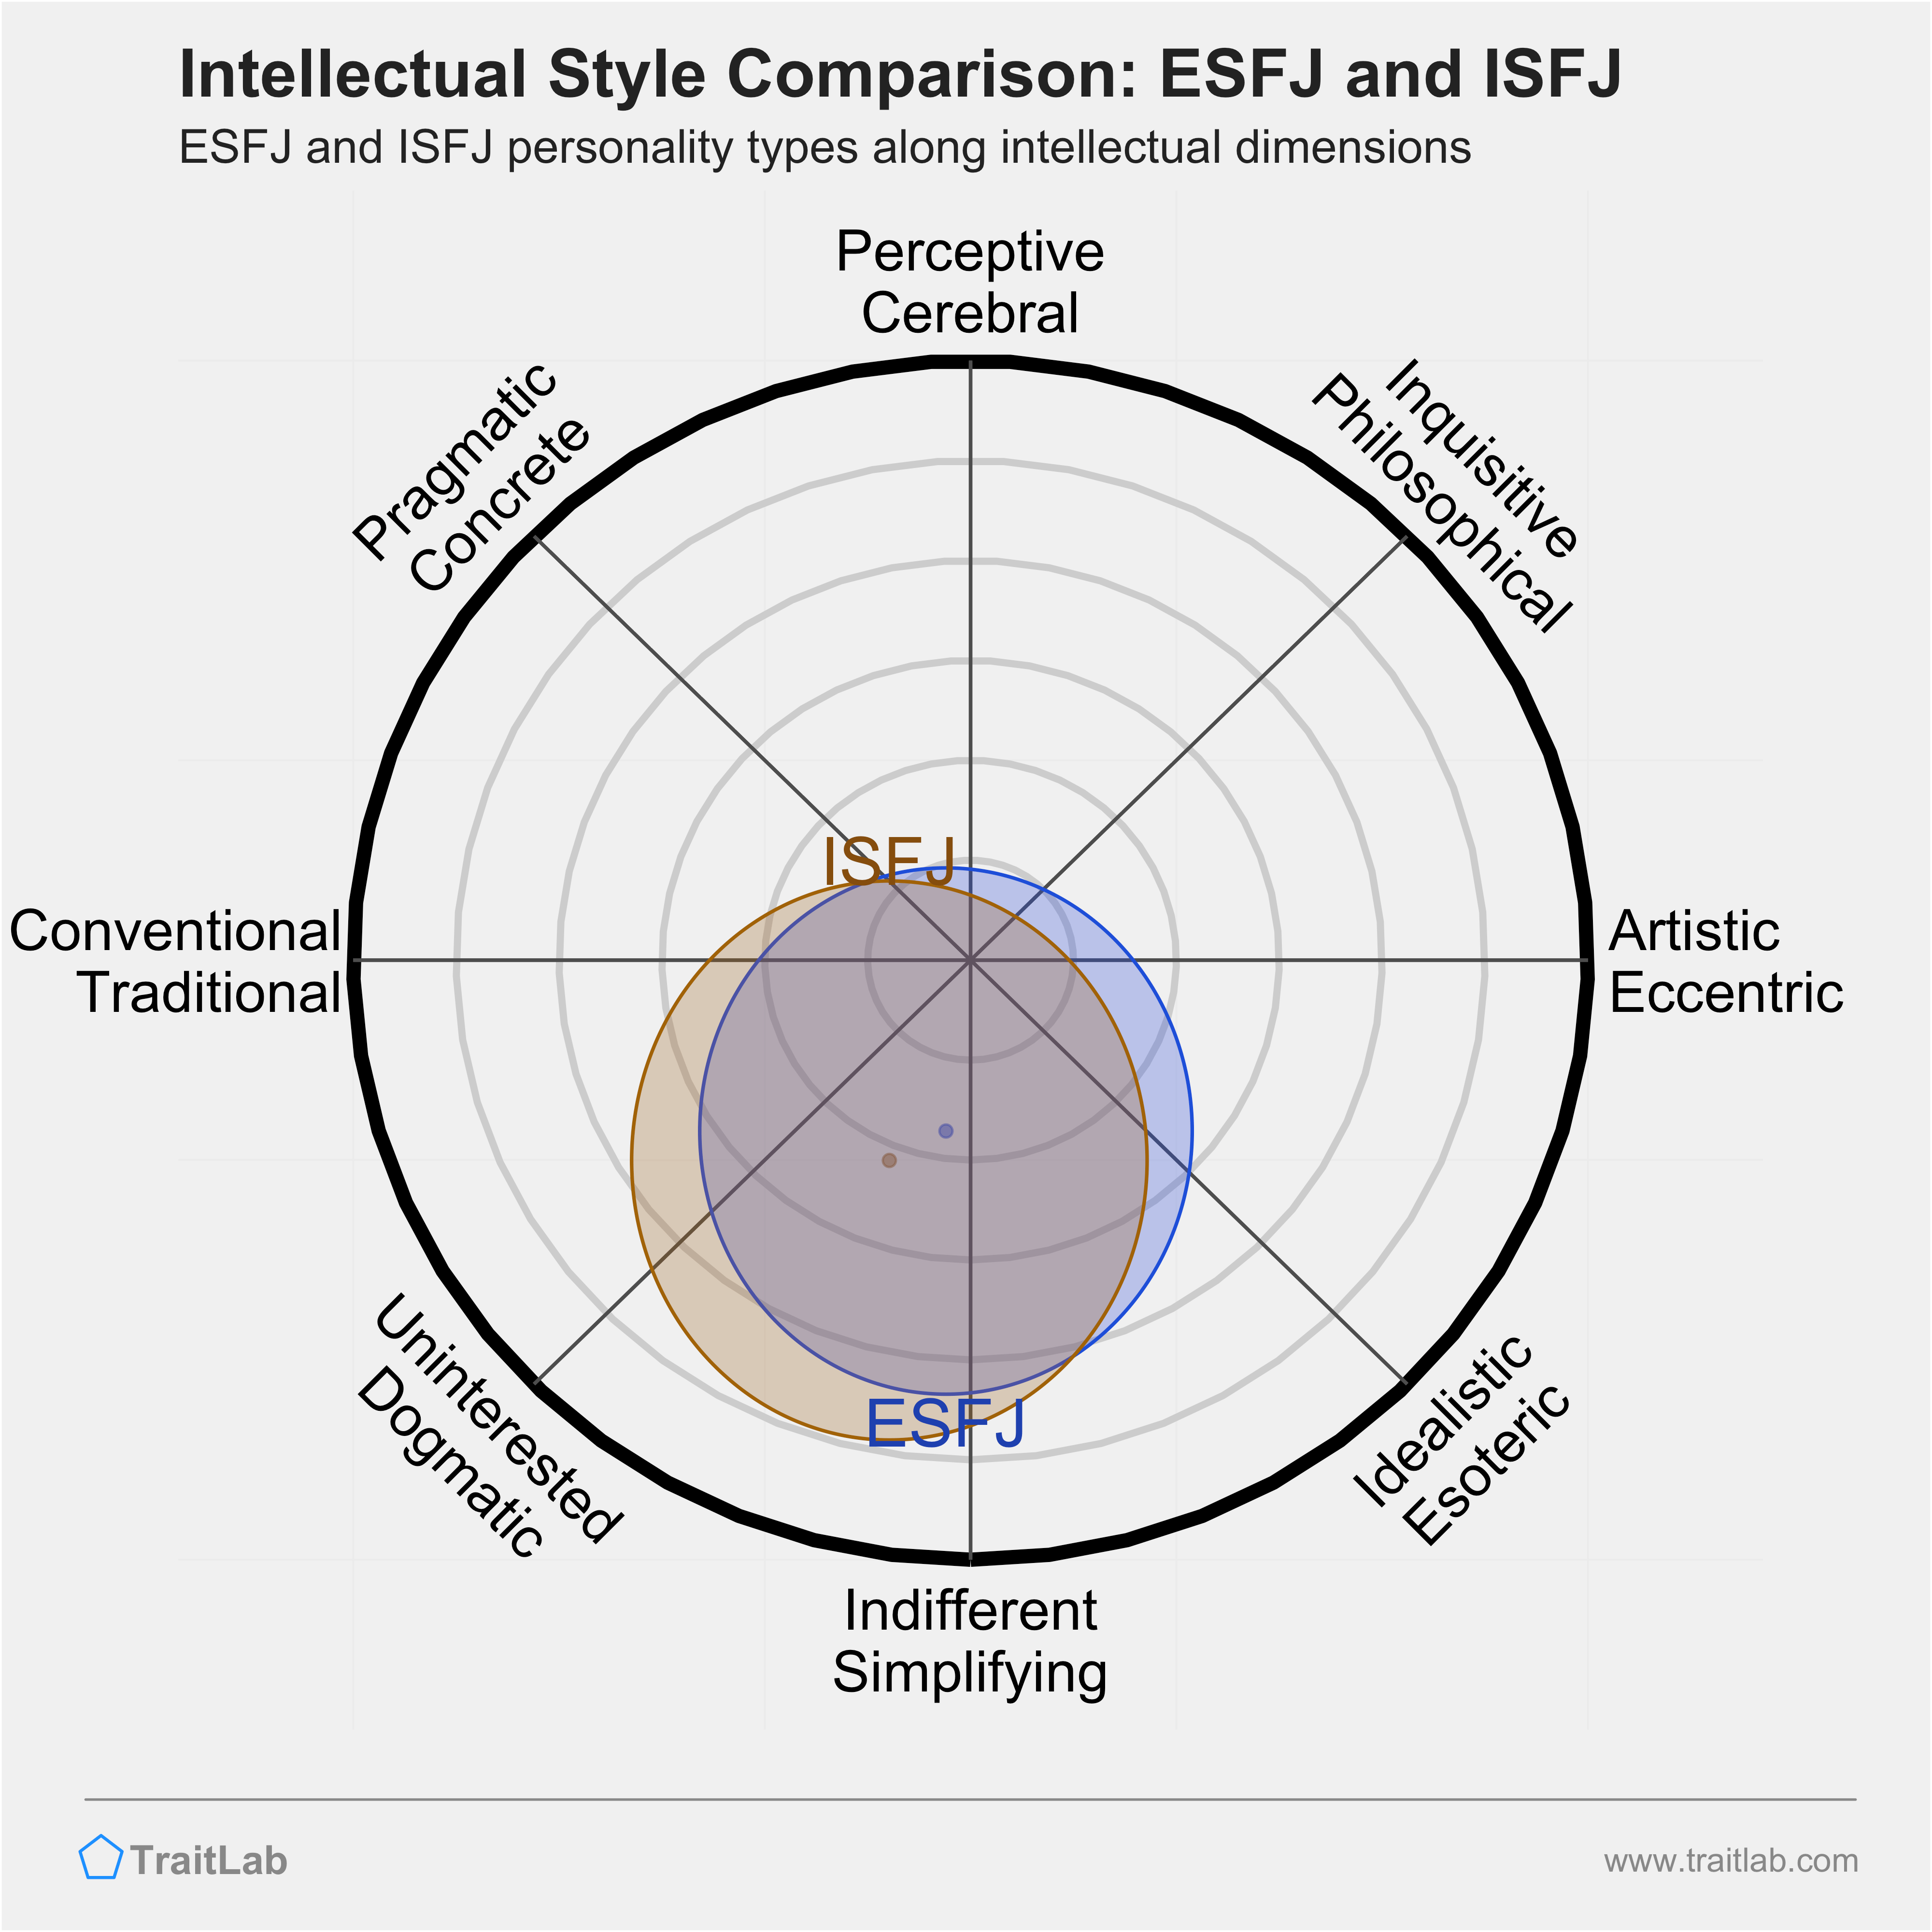 ESFJ and ISFJ comparison across intellectual dimensions